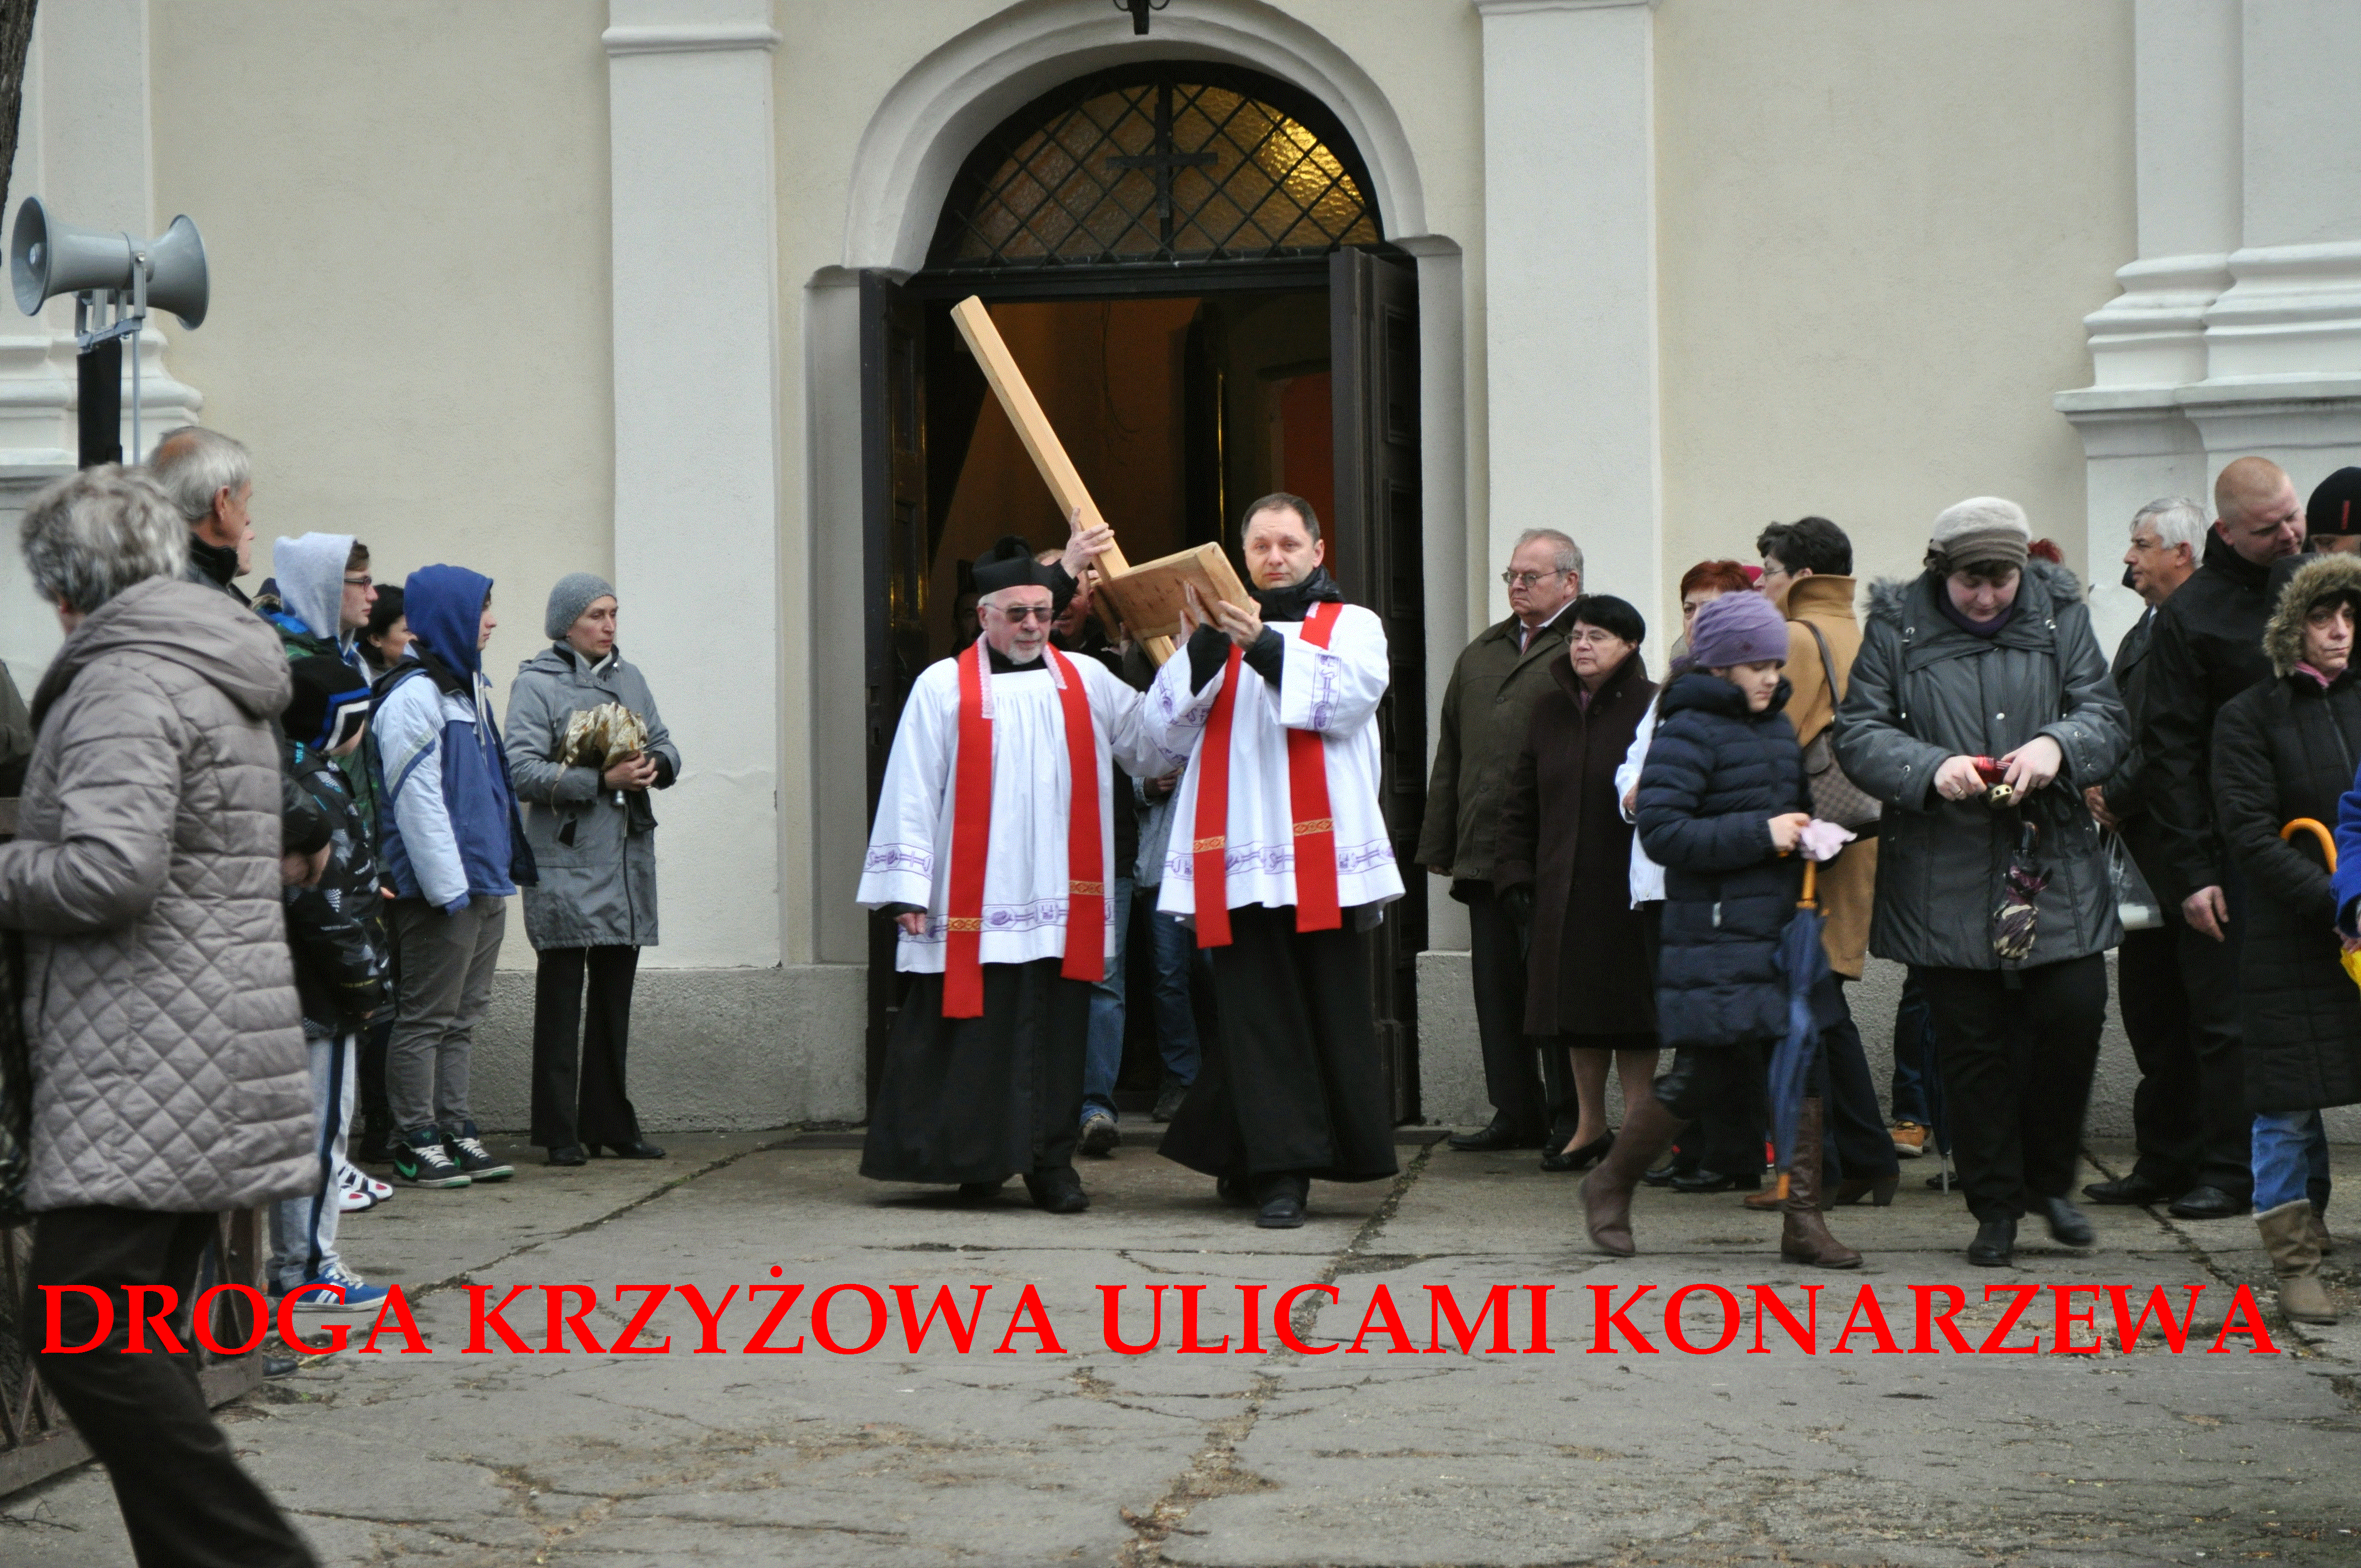 Droga Krzyżowa ulicami Konarzewa